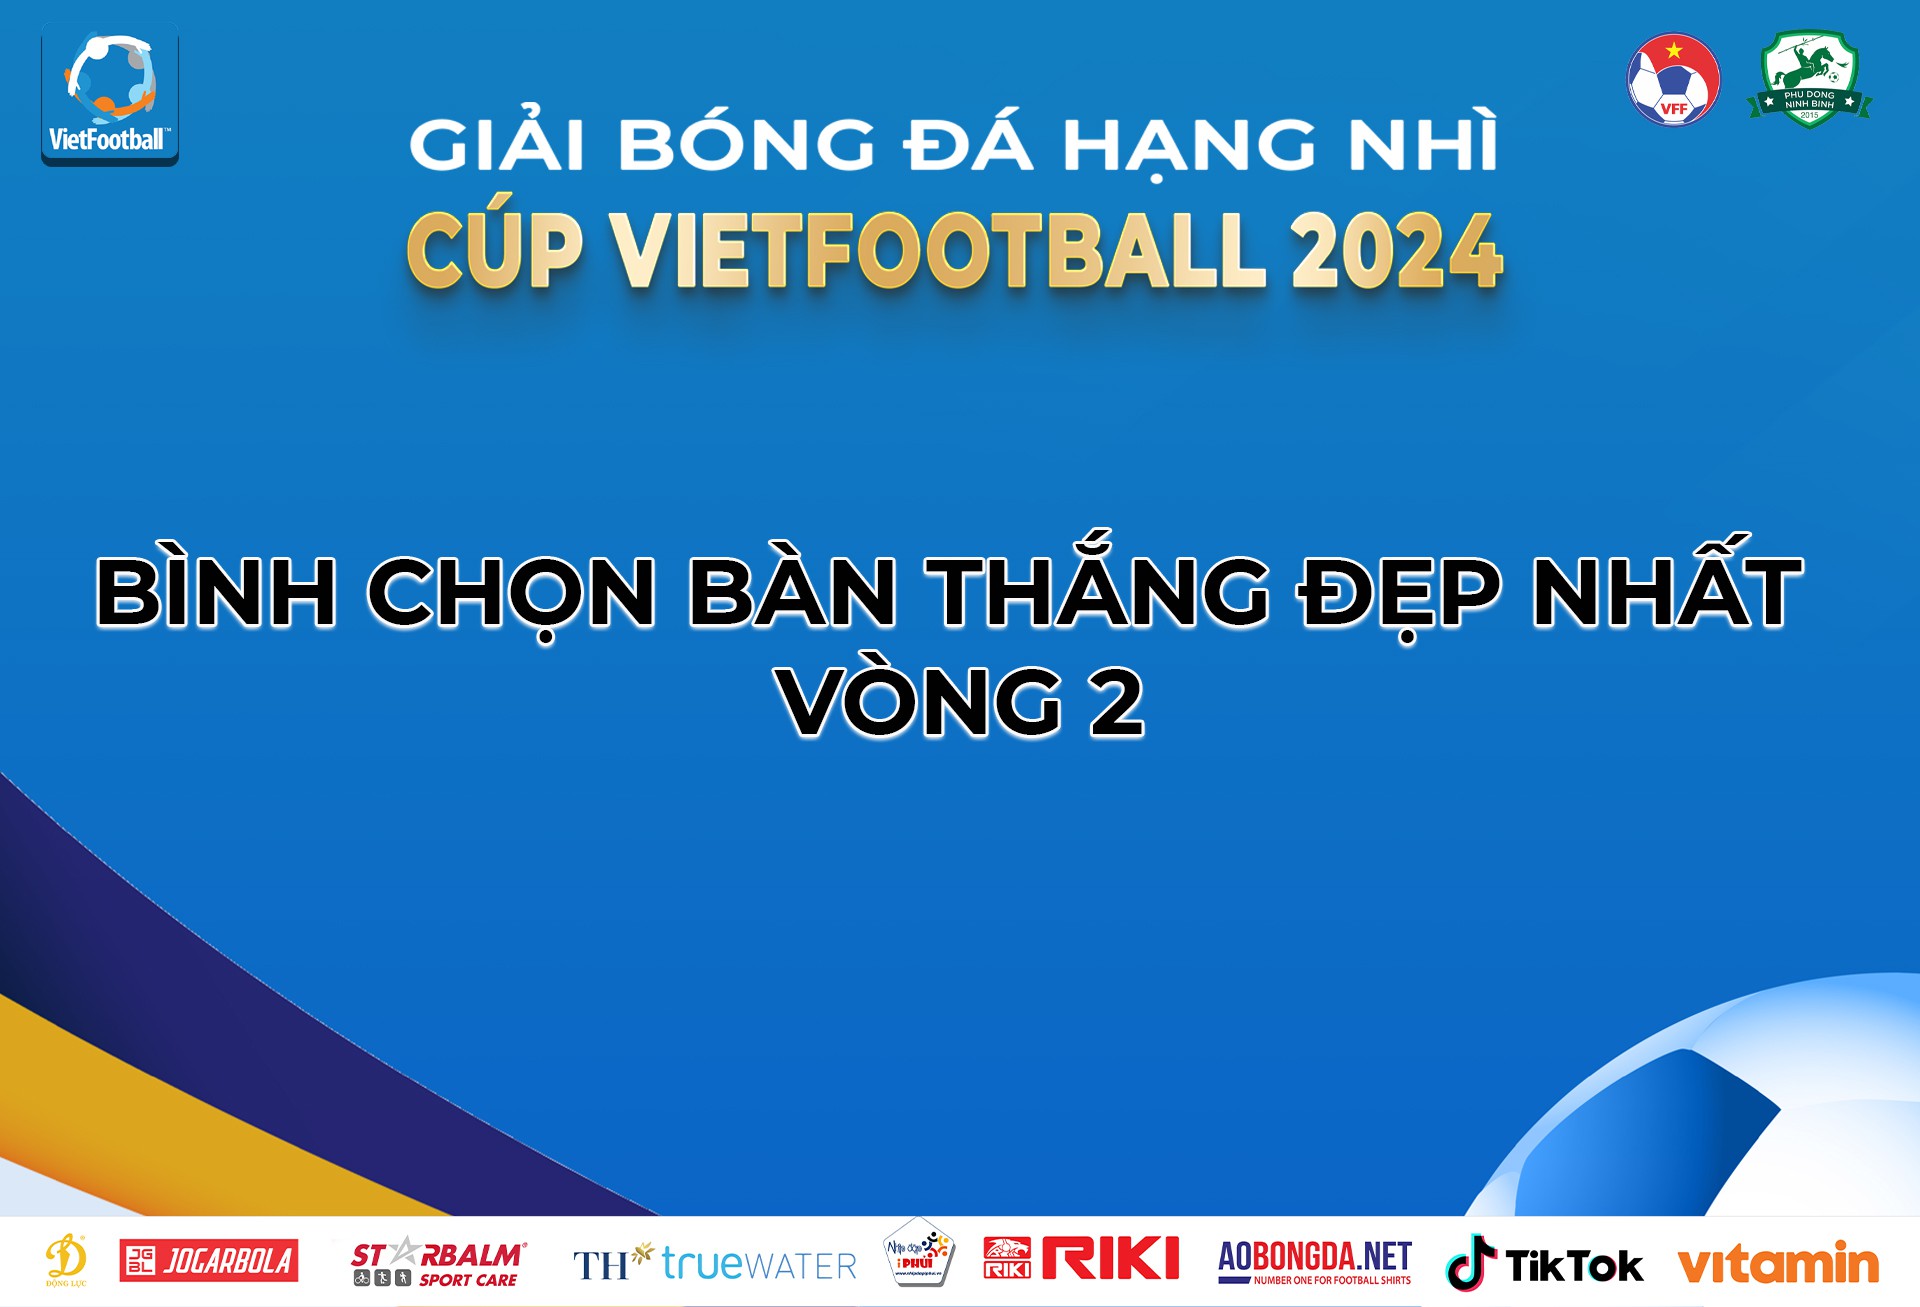 Bình chọn bàn thắng đẹp nhất vòng 2 giải bóng đá Hạng Nhì - Cúp VietFootball 2024